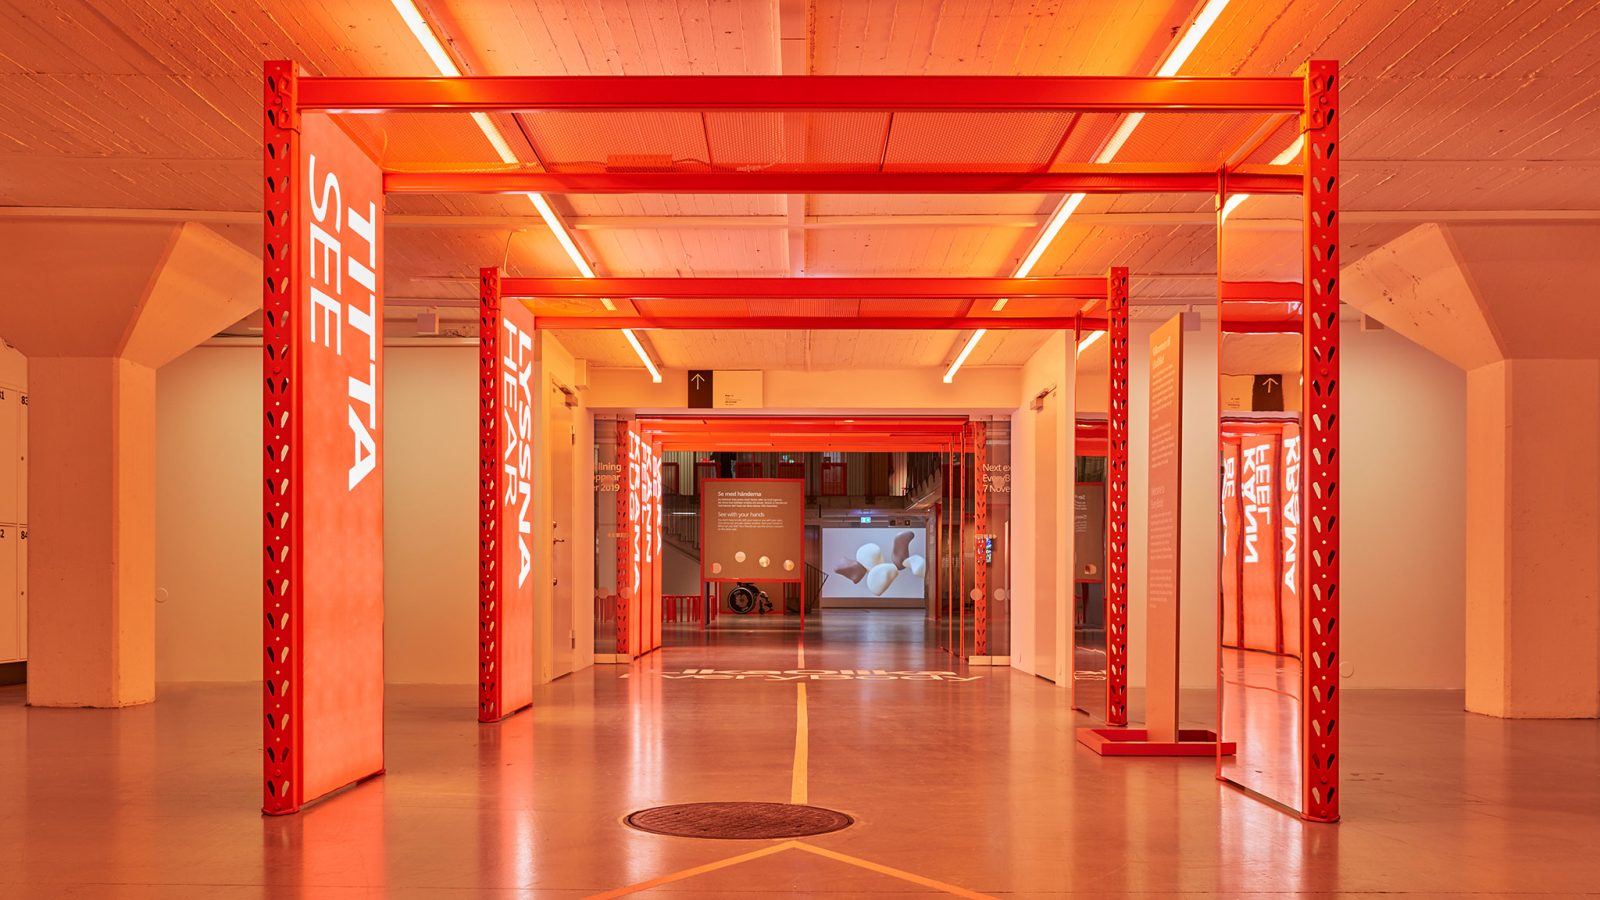 En korridor inne på IKEA Museum med orange belysning och flera orange pelare med stora, vita bokstäver som bildar orden ”TITTA”, ”LYSSNA” o.s.v.